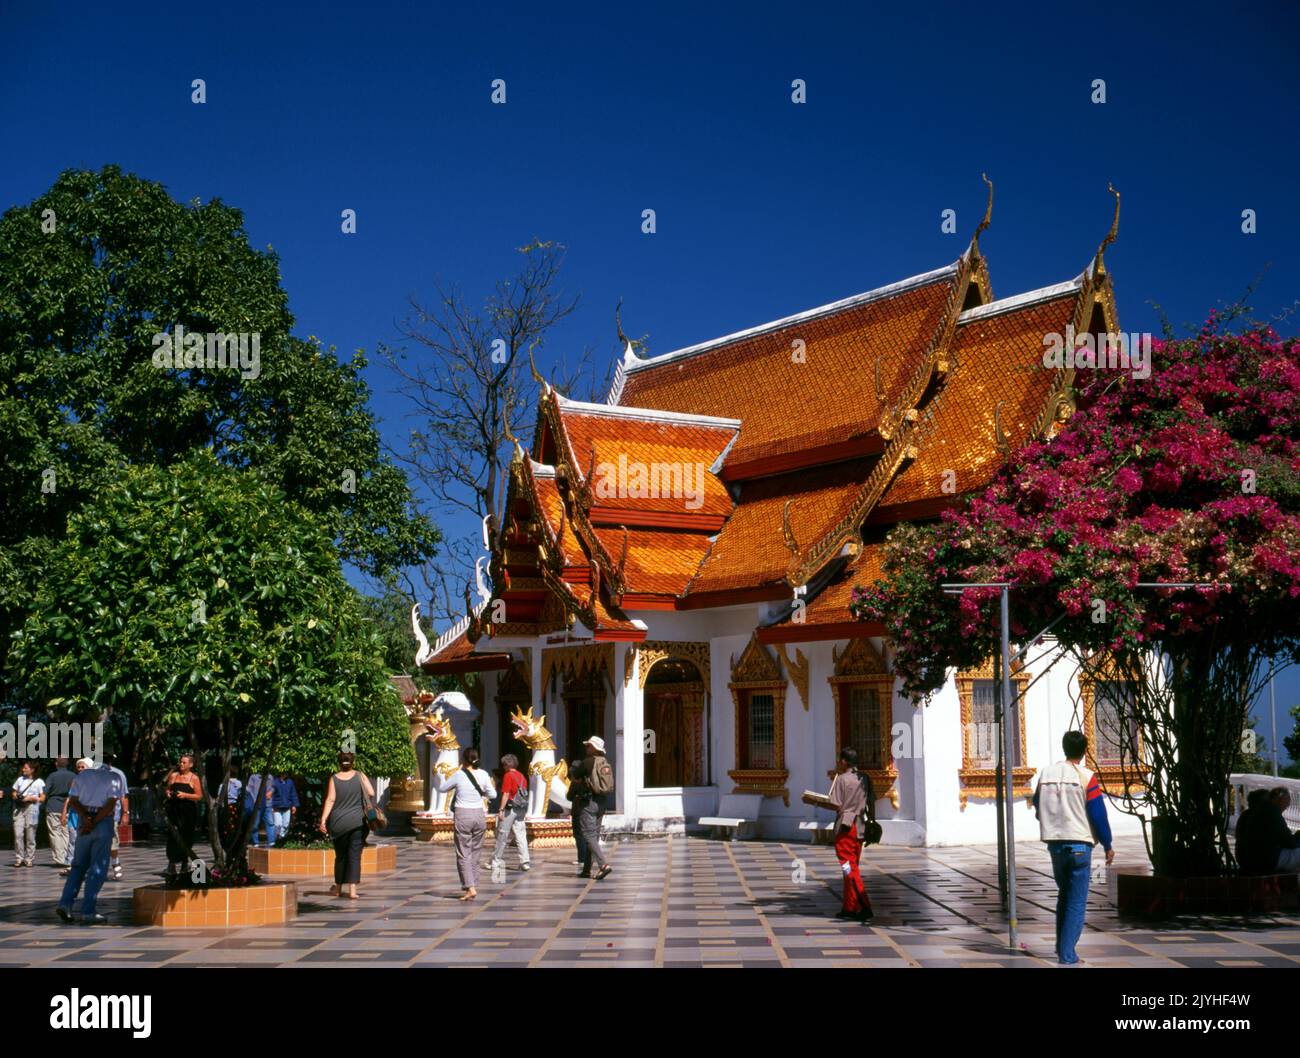 Thaïlande: Wat Phrathat Doi Suthep, temple bouddhiste theravada situé sur Doi Suthep (montagne Suthep), surplombant la ville de Chiang Mai. Le magnifique chedi doré, datant du 16th siècle, offre une vue superbe sur la vallée de Chiang Mai et la rivière Ping. Le roi Mengrai fonda la ville de Chiang Mai (c'est-à-dire « nouvelle ville ») en 1296, et il succéda à Chiang Rai comme capitale du royaume de Lanna. Banque D'Images